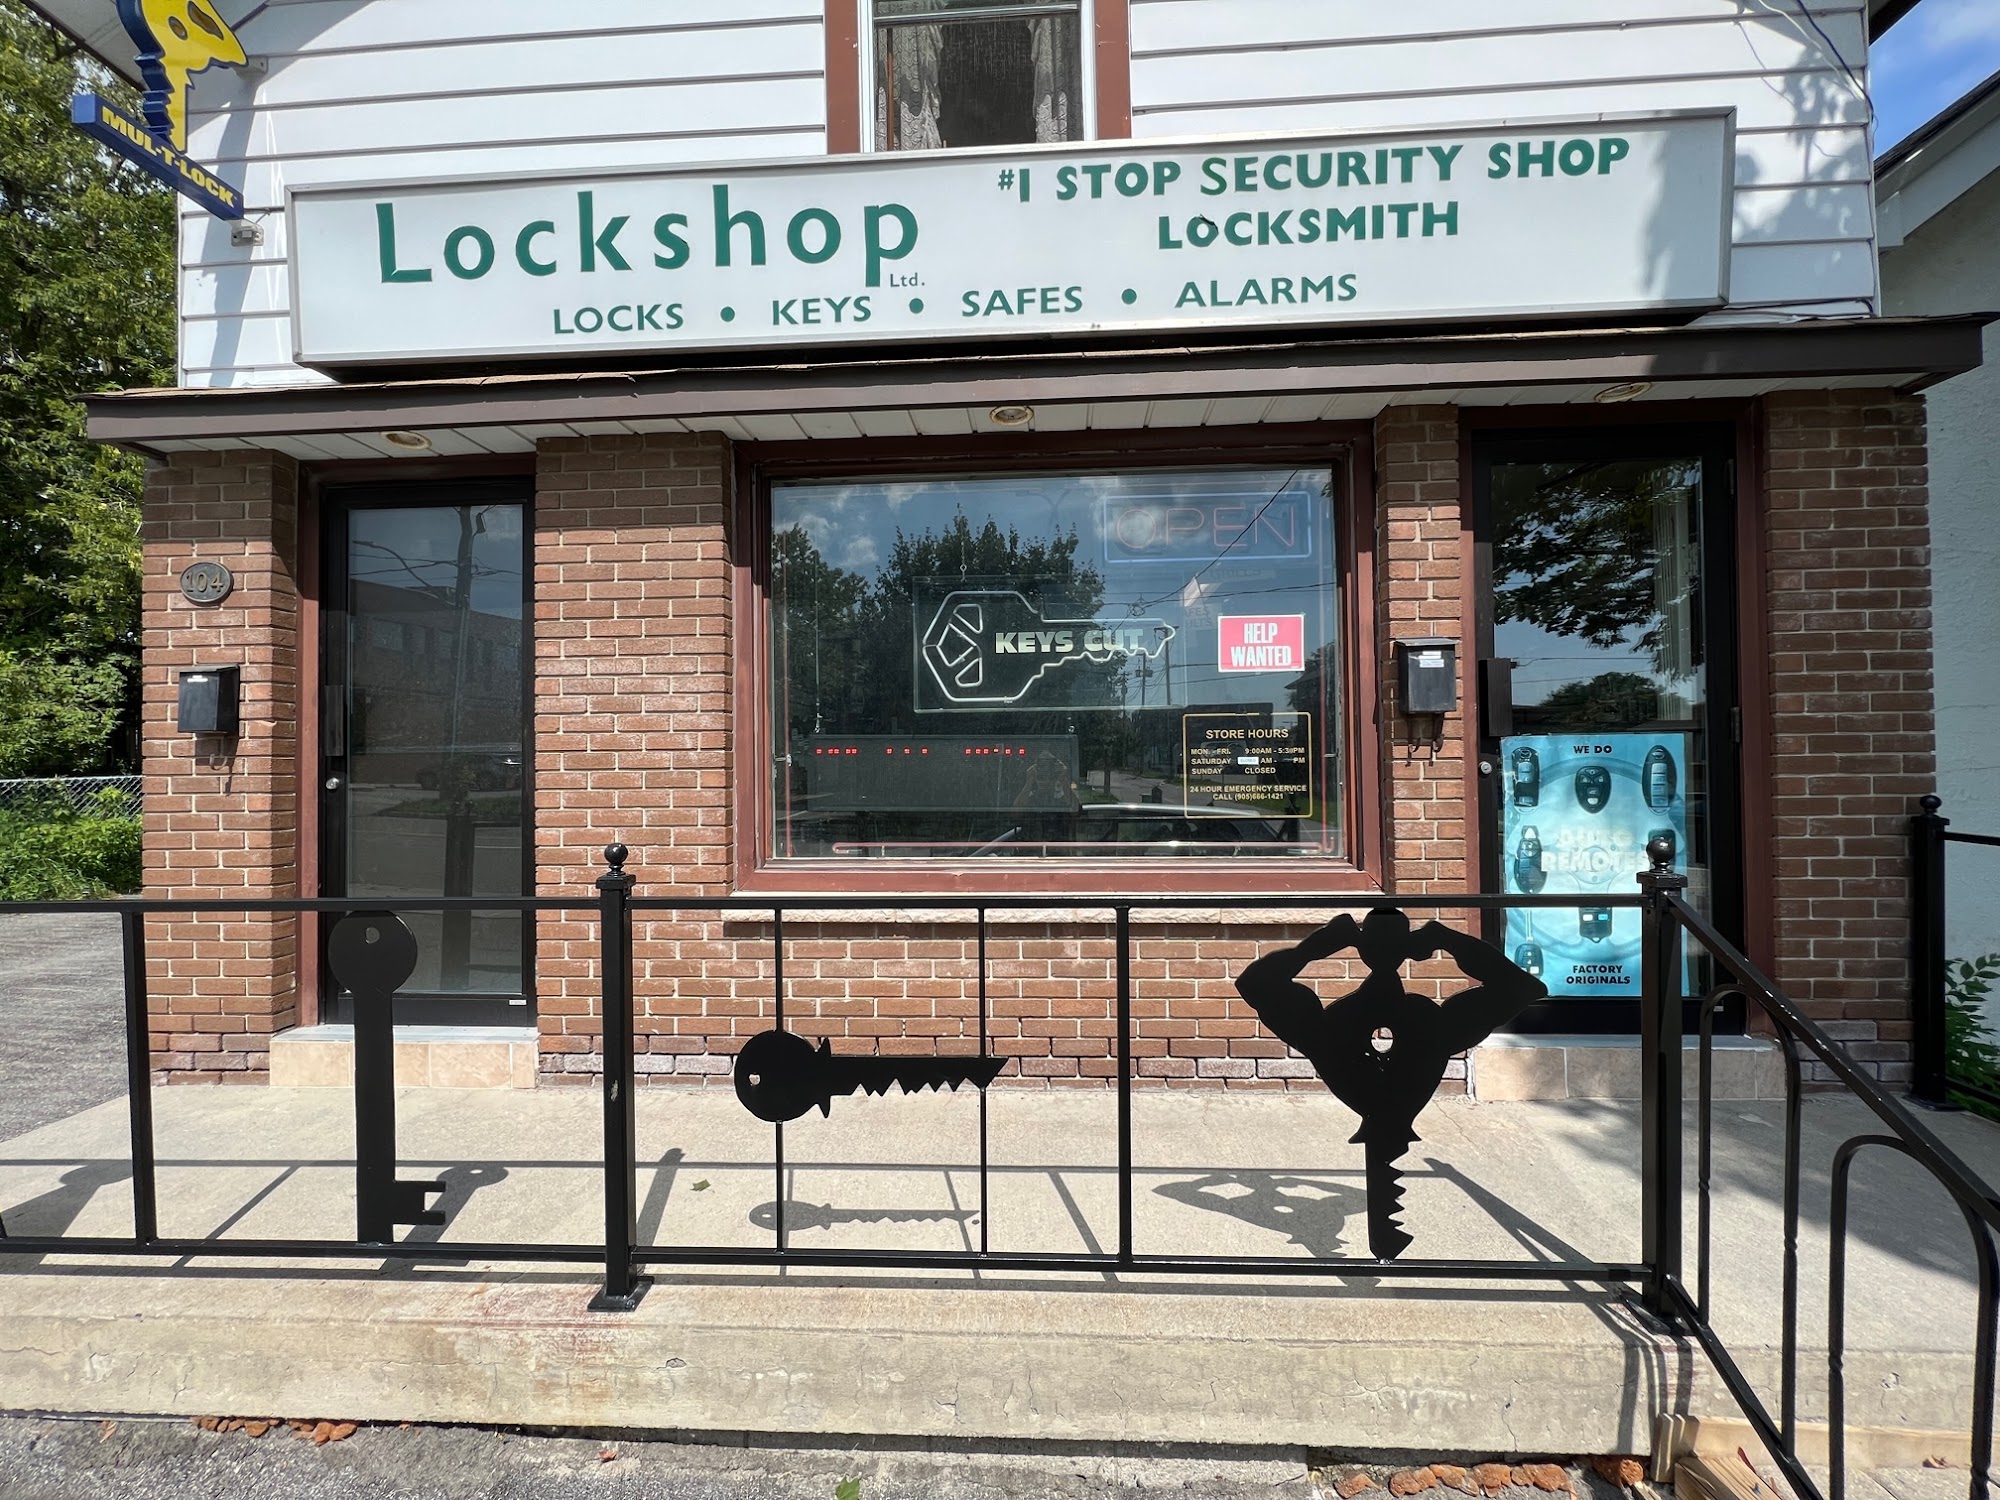 Lockshop Ltd